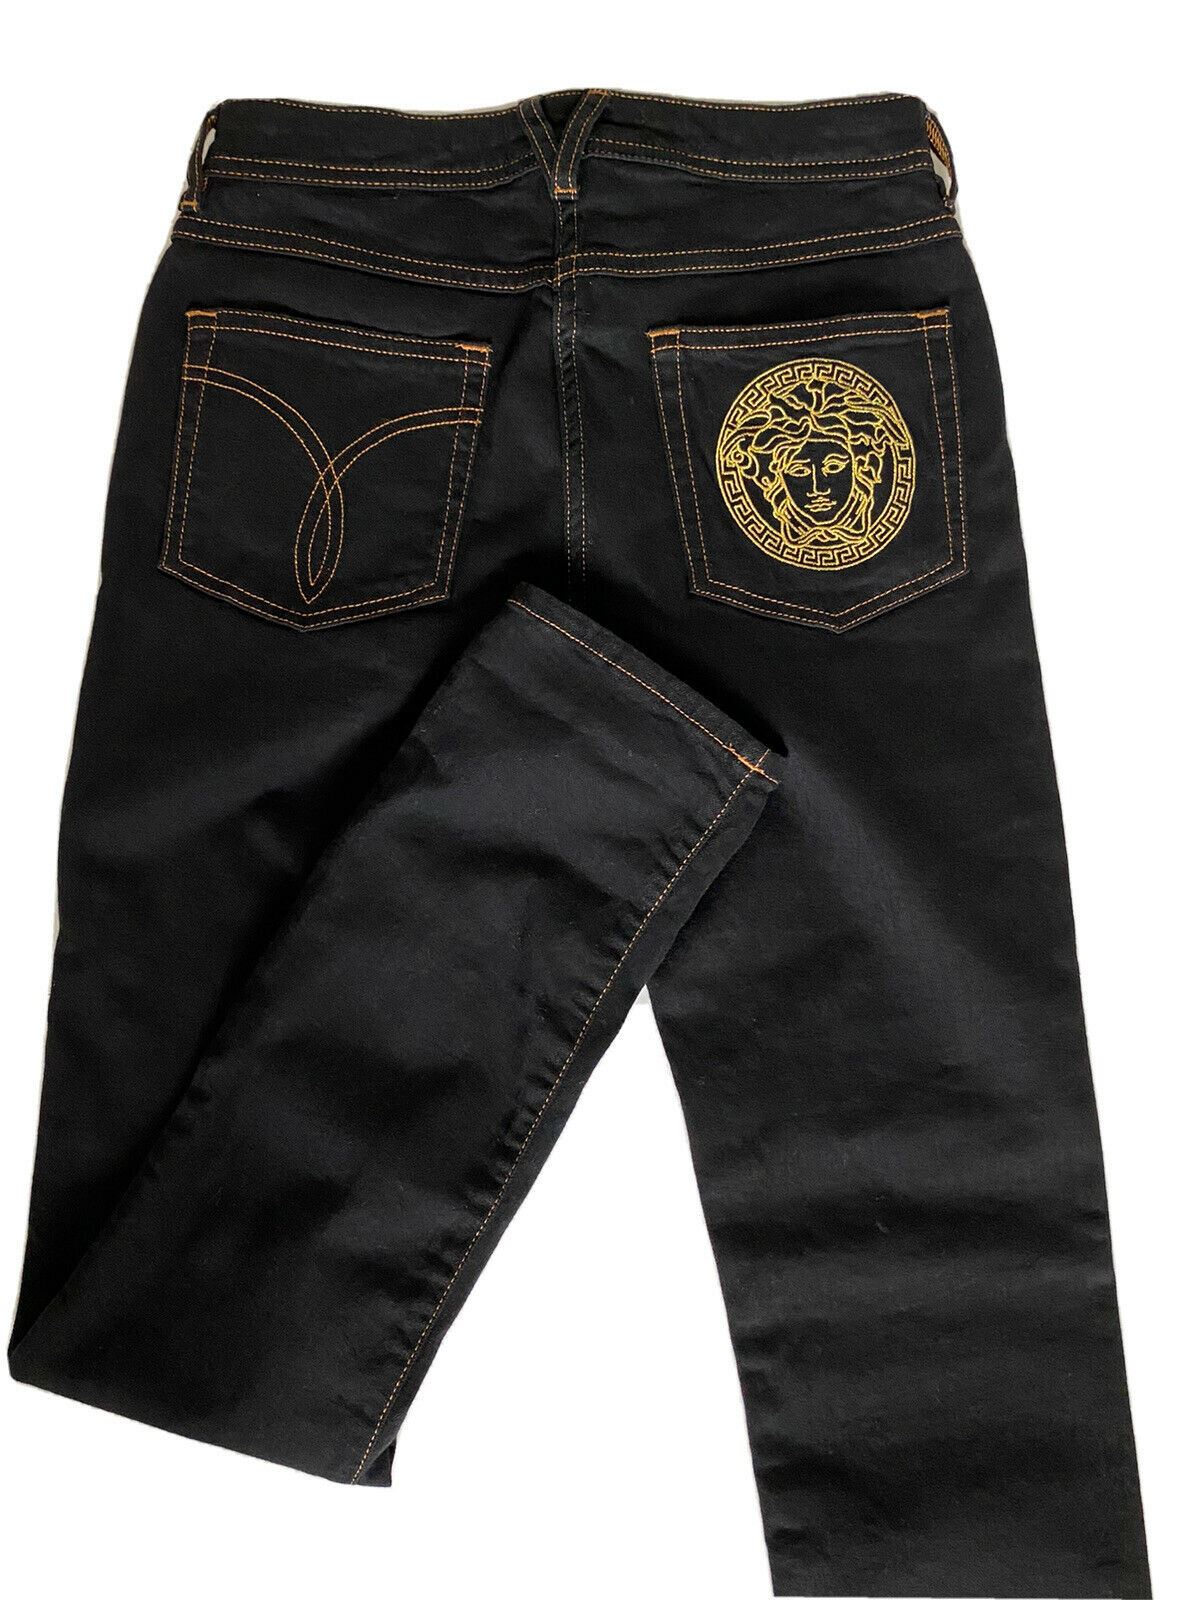 Neu mit Etikett: 500 $ Versace Damen-Denim-Jeans in Schwarz, Größe 25 US A89556S, hergestellt in Italien